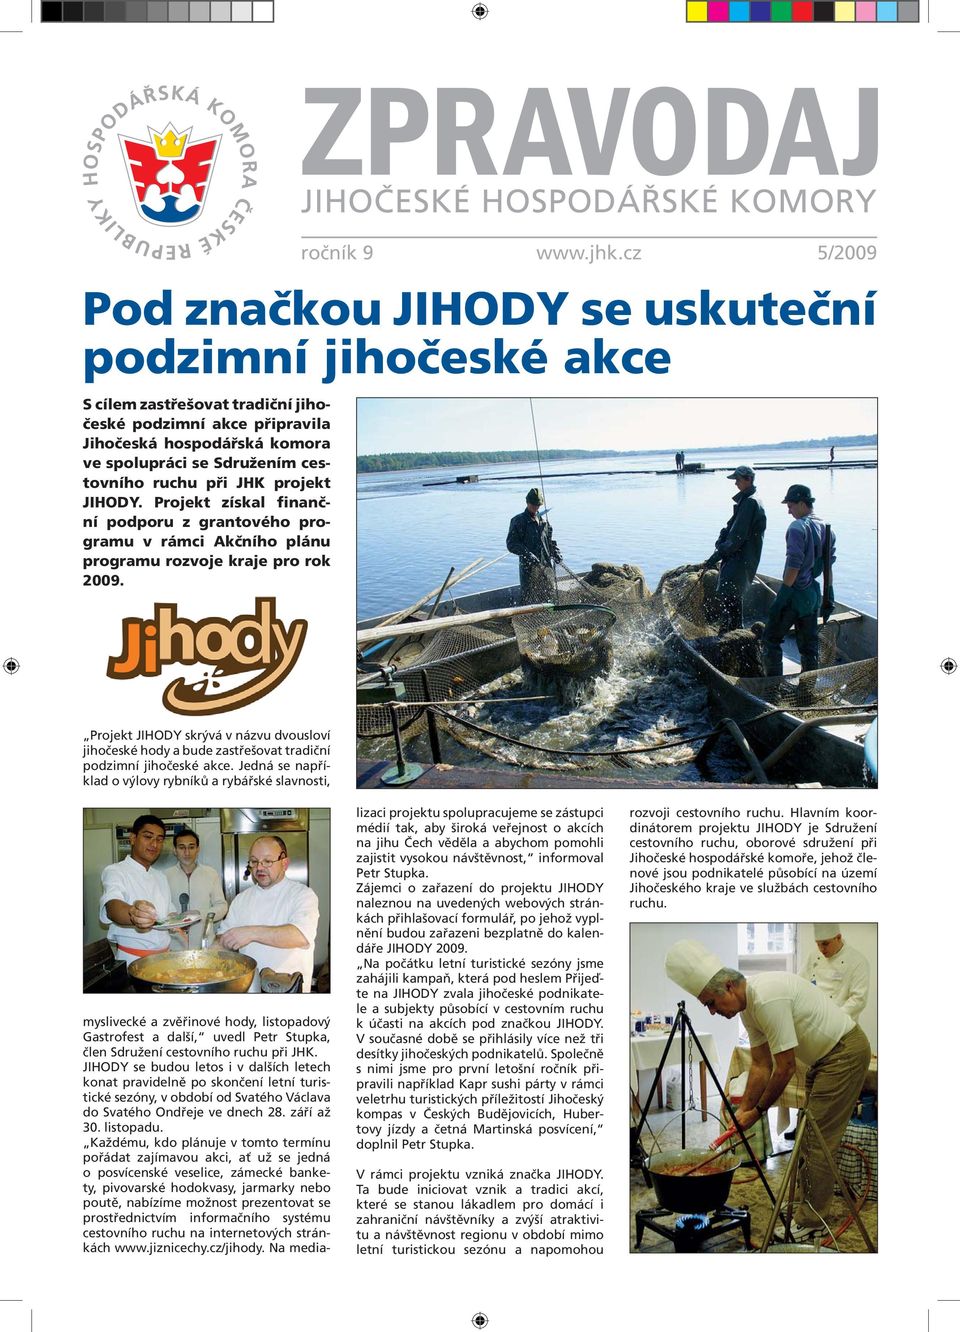 Projekt JIHODY skrývá v názvu dvousloví jihočeské hody a bude zastřešovat tradiční podzimní jihočeské akce.